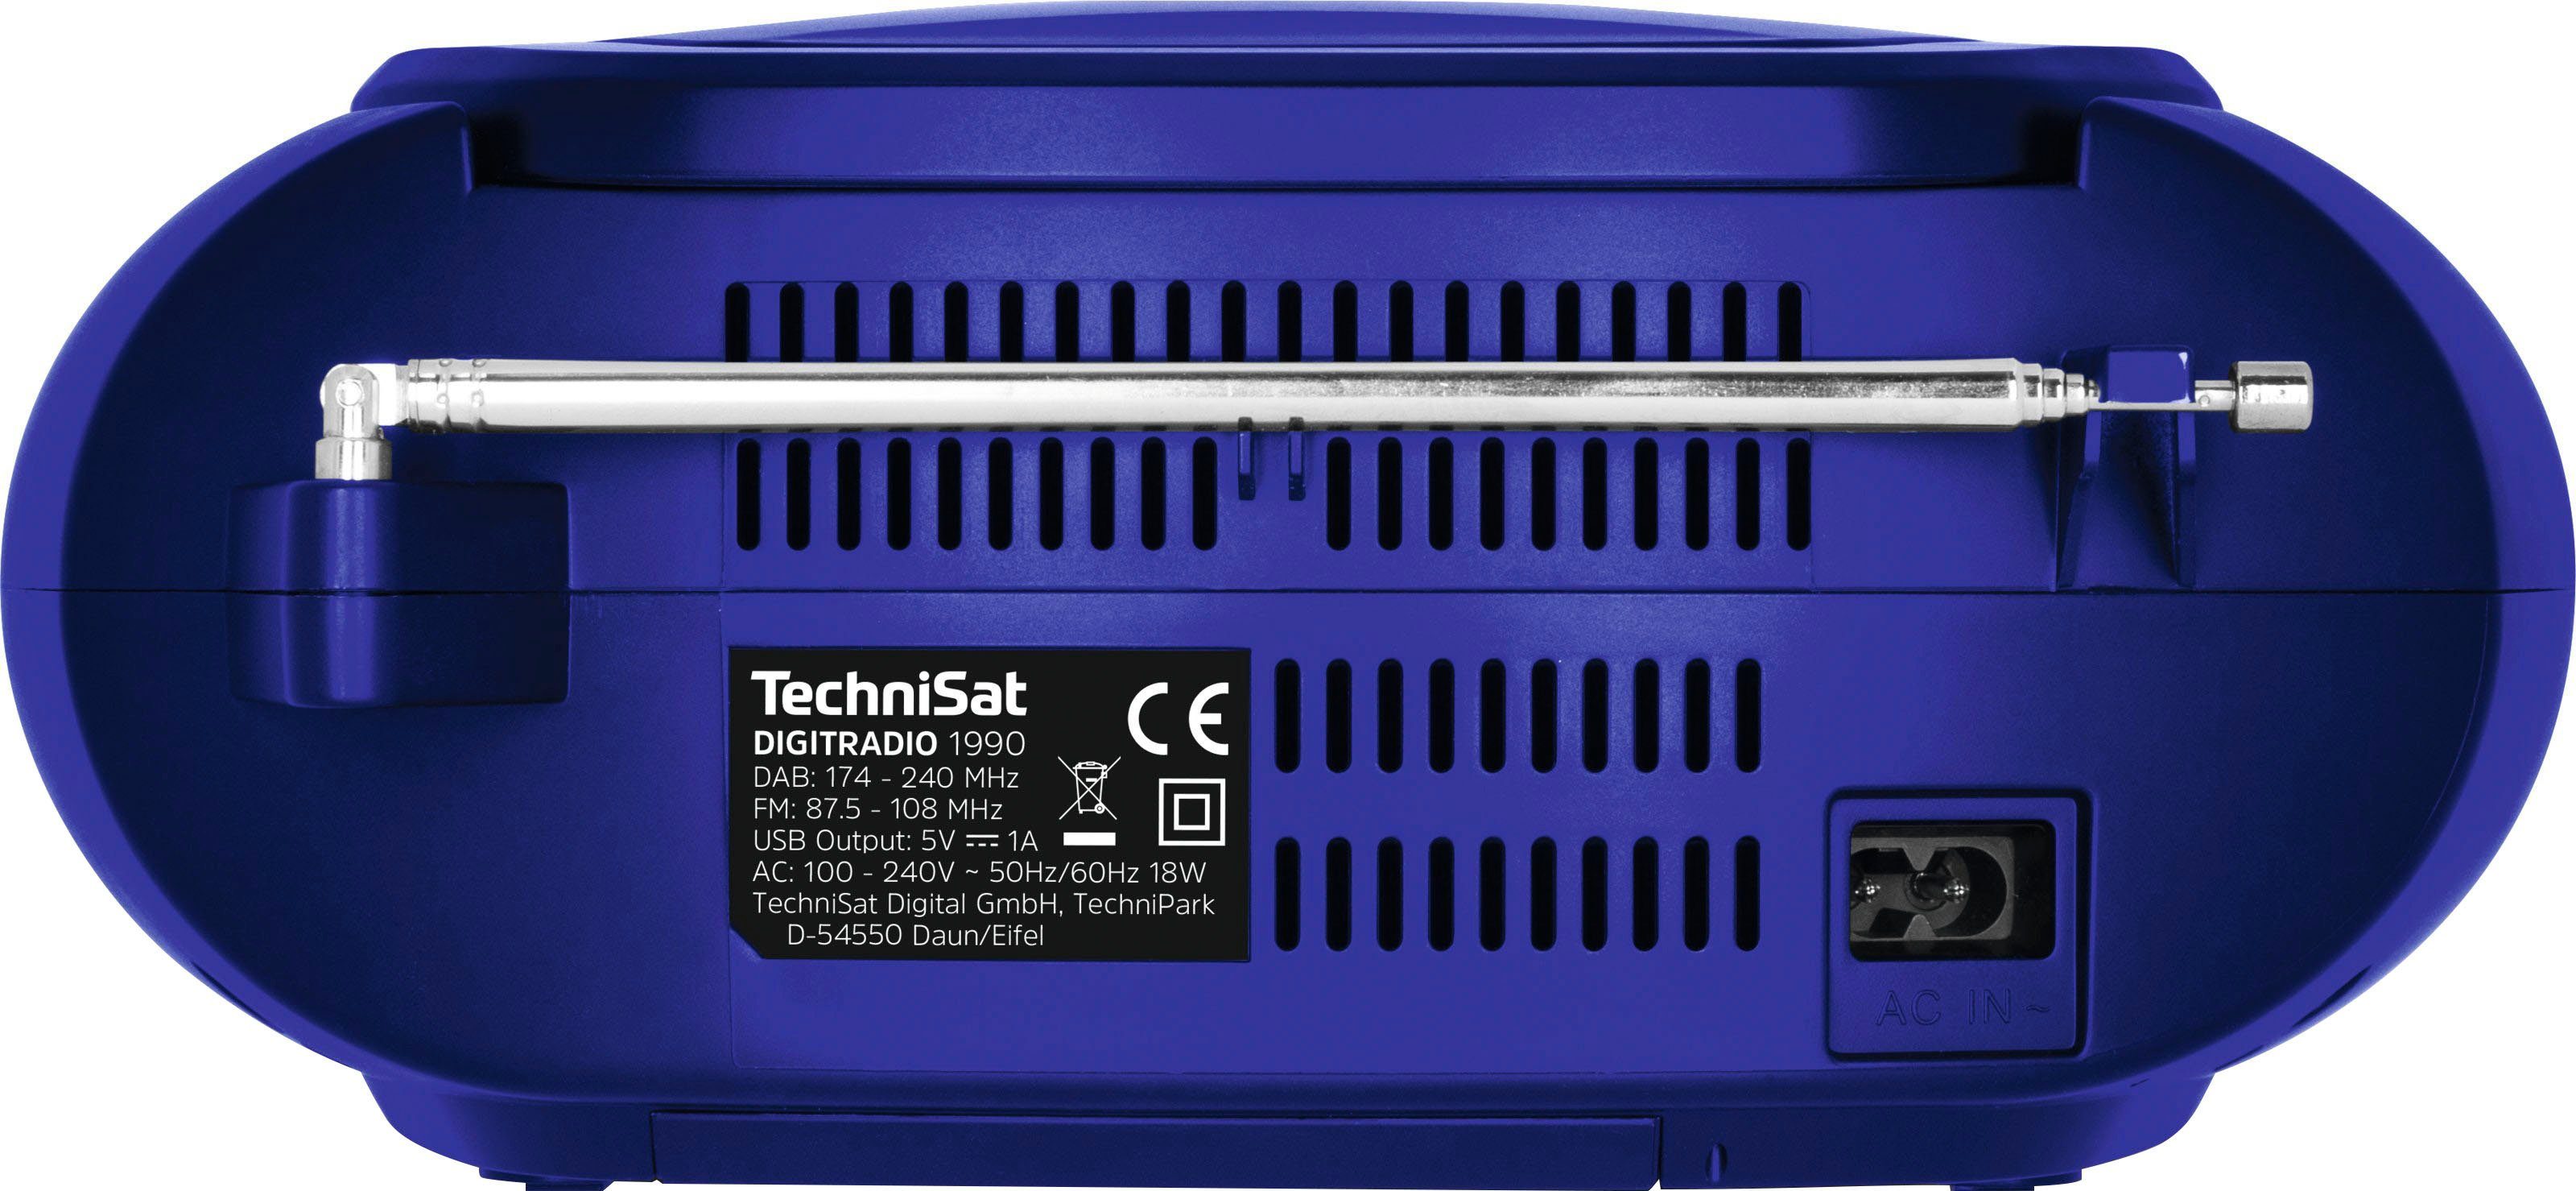 blau CD-Player) mit (DAB) 3 TechniSat RDS, DIGITRADIO W, 1990 UKW (Digitalradio (DAB), Digitalradio